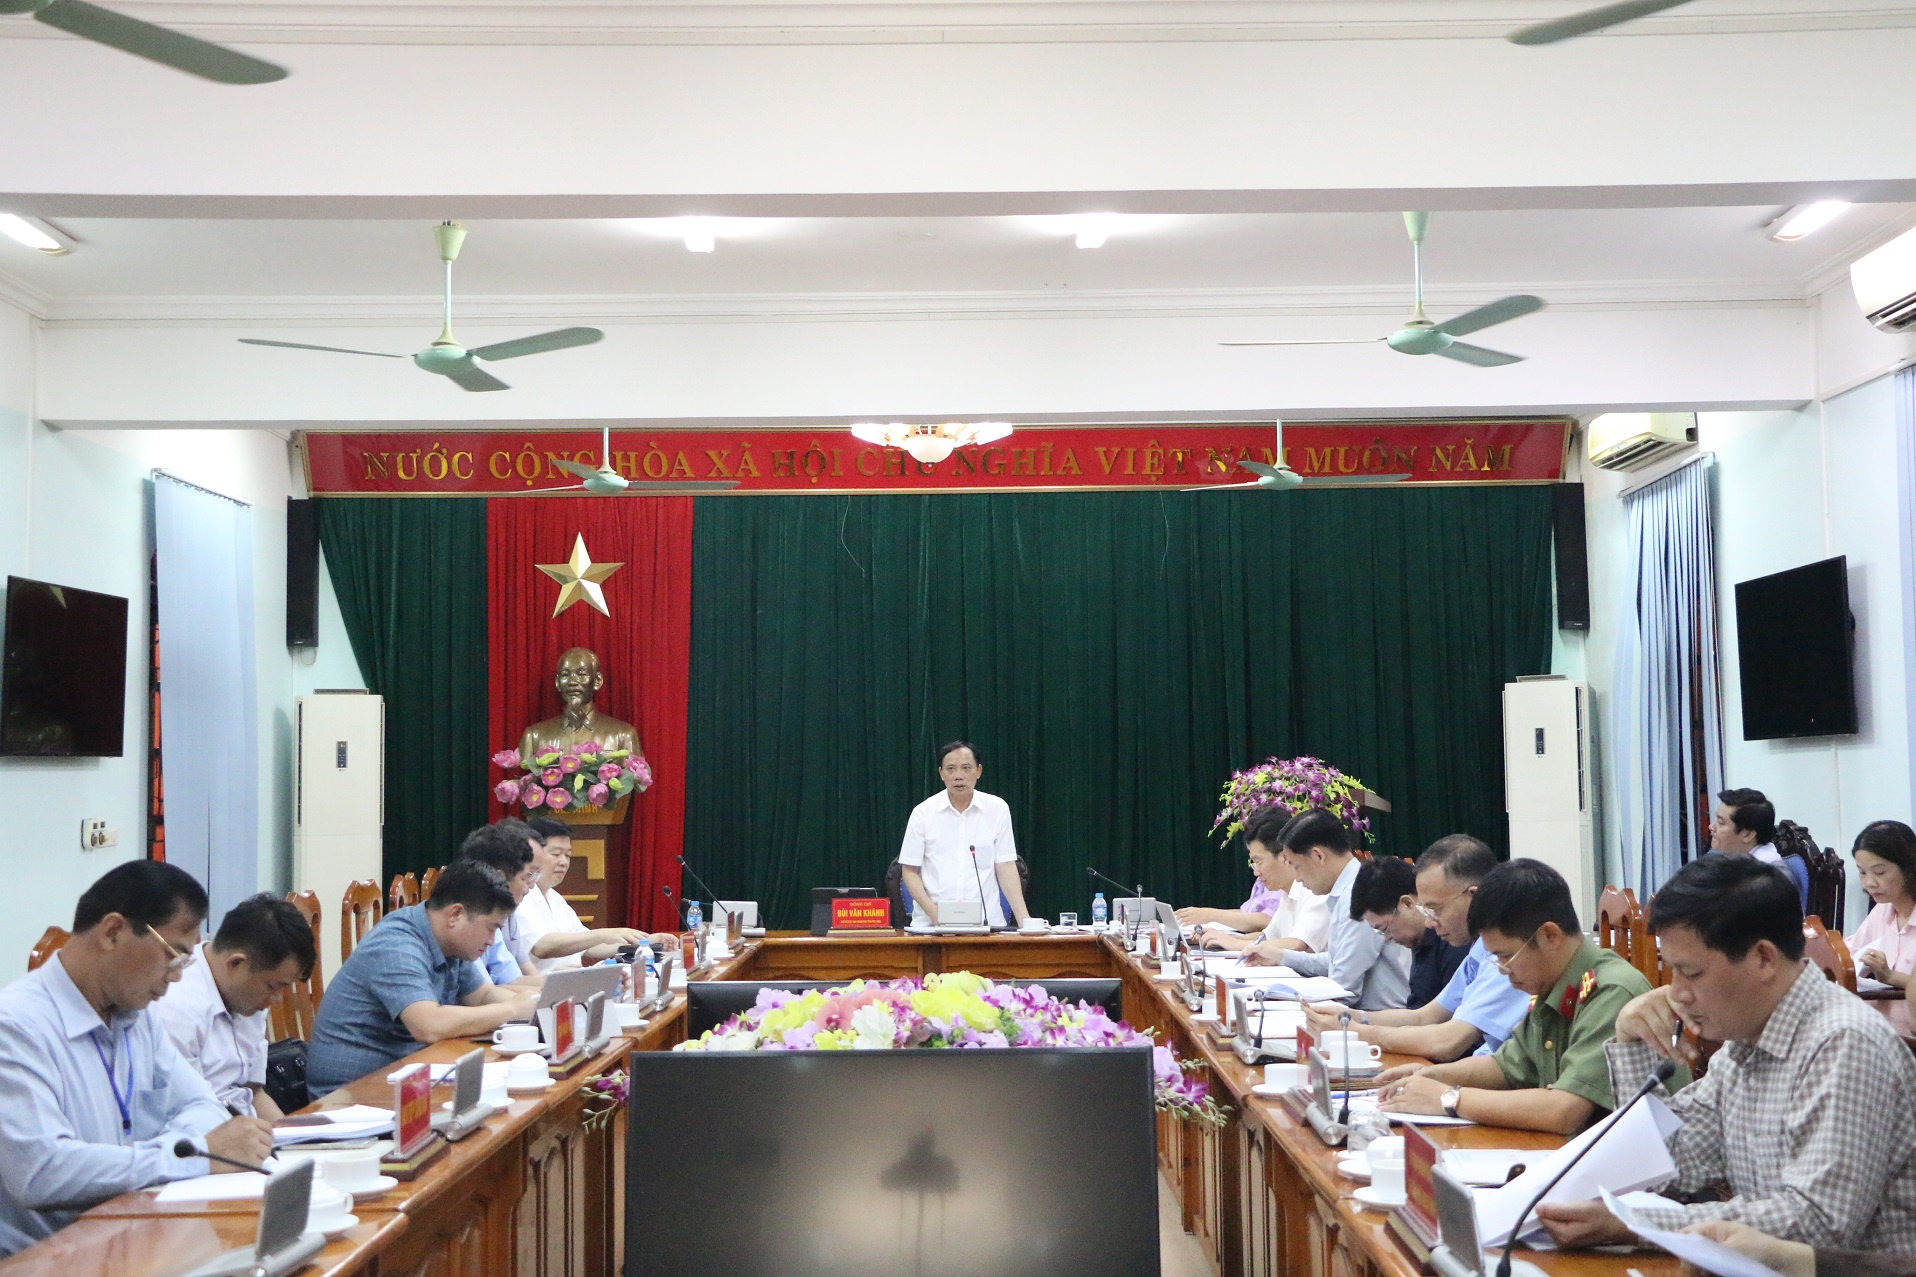 Đồng chí Bùi Văn Khánh, Phó Bí thư Tỉnh ủy, Chủ tịch UBND tỉnh chủ trì cuộc họp